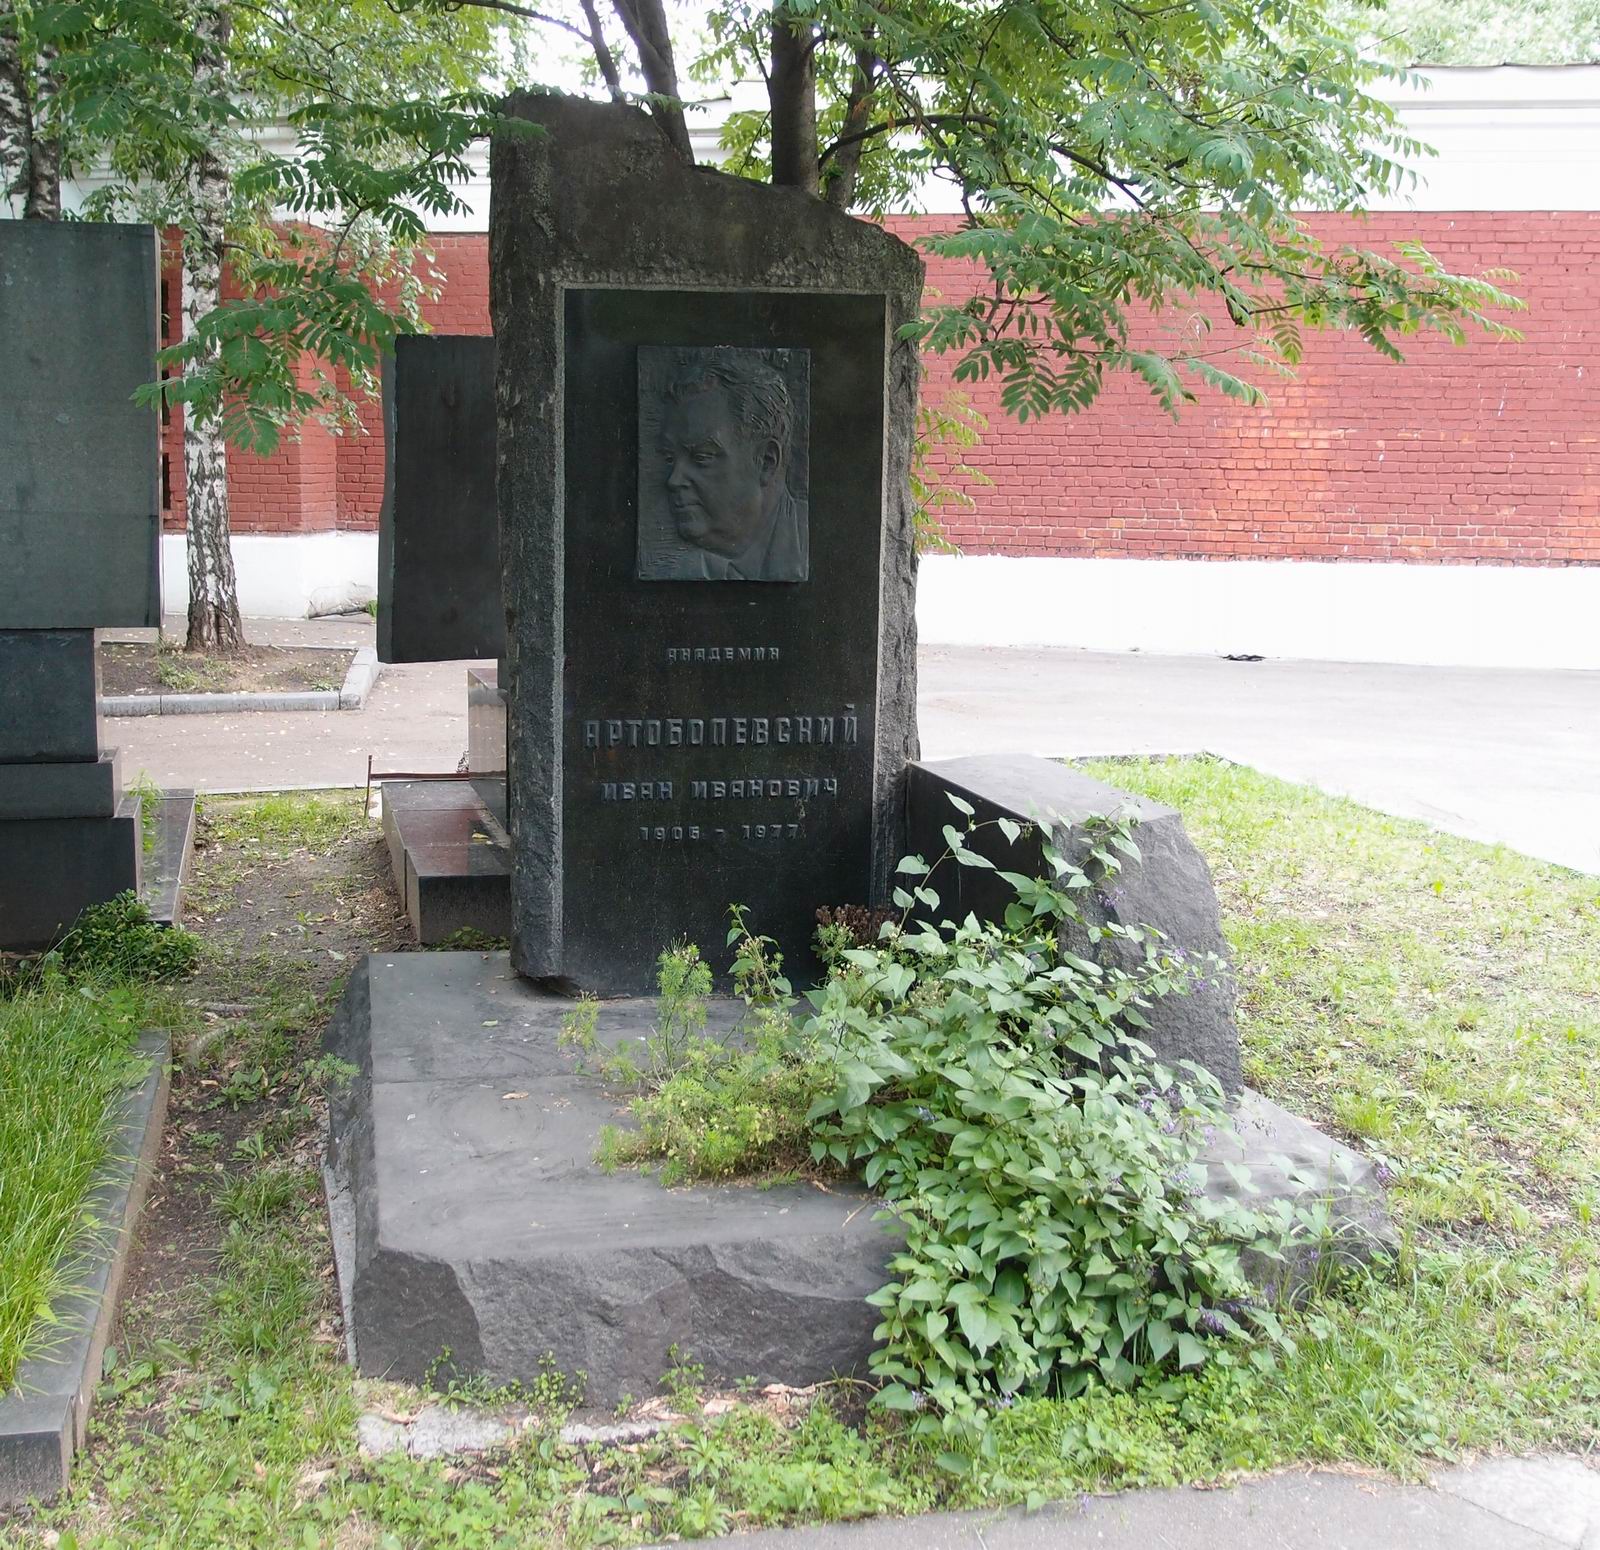 Памятник на могиле Артоболевского И.И. (1905-1977), ск. Л.Кардашова, на Новодевичьем кладбище (9-3-16).